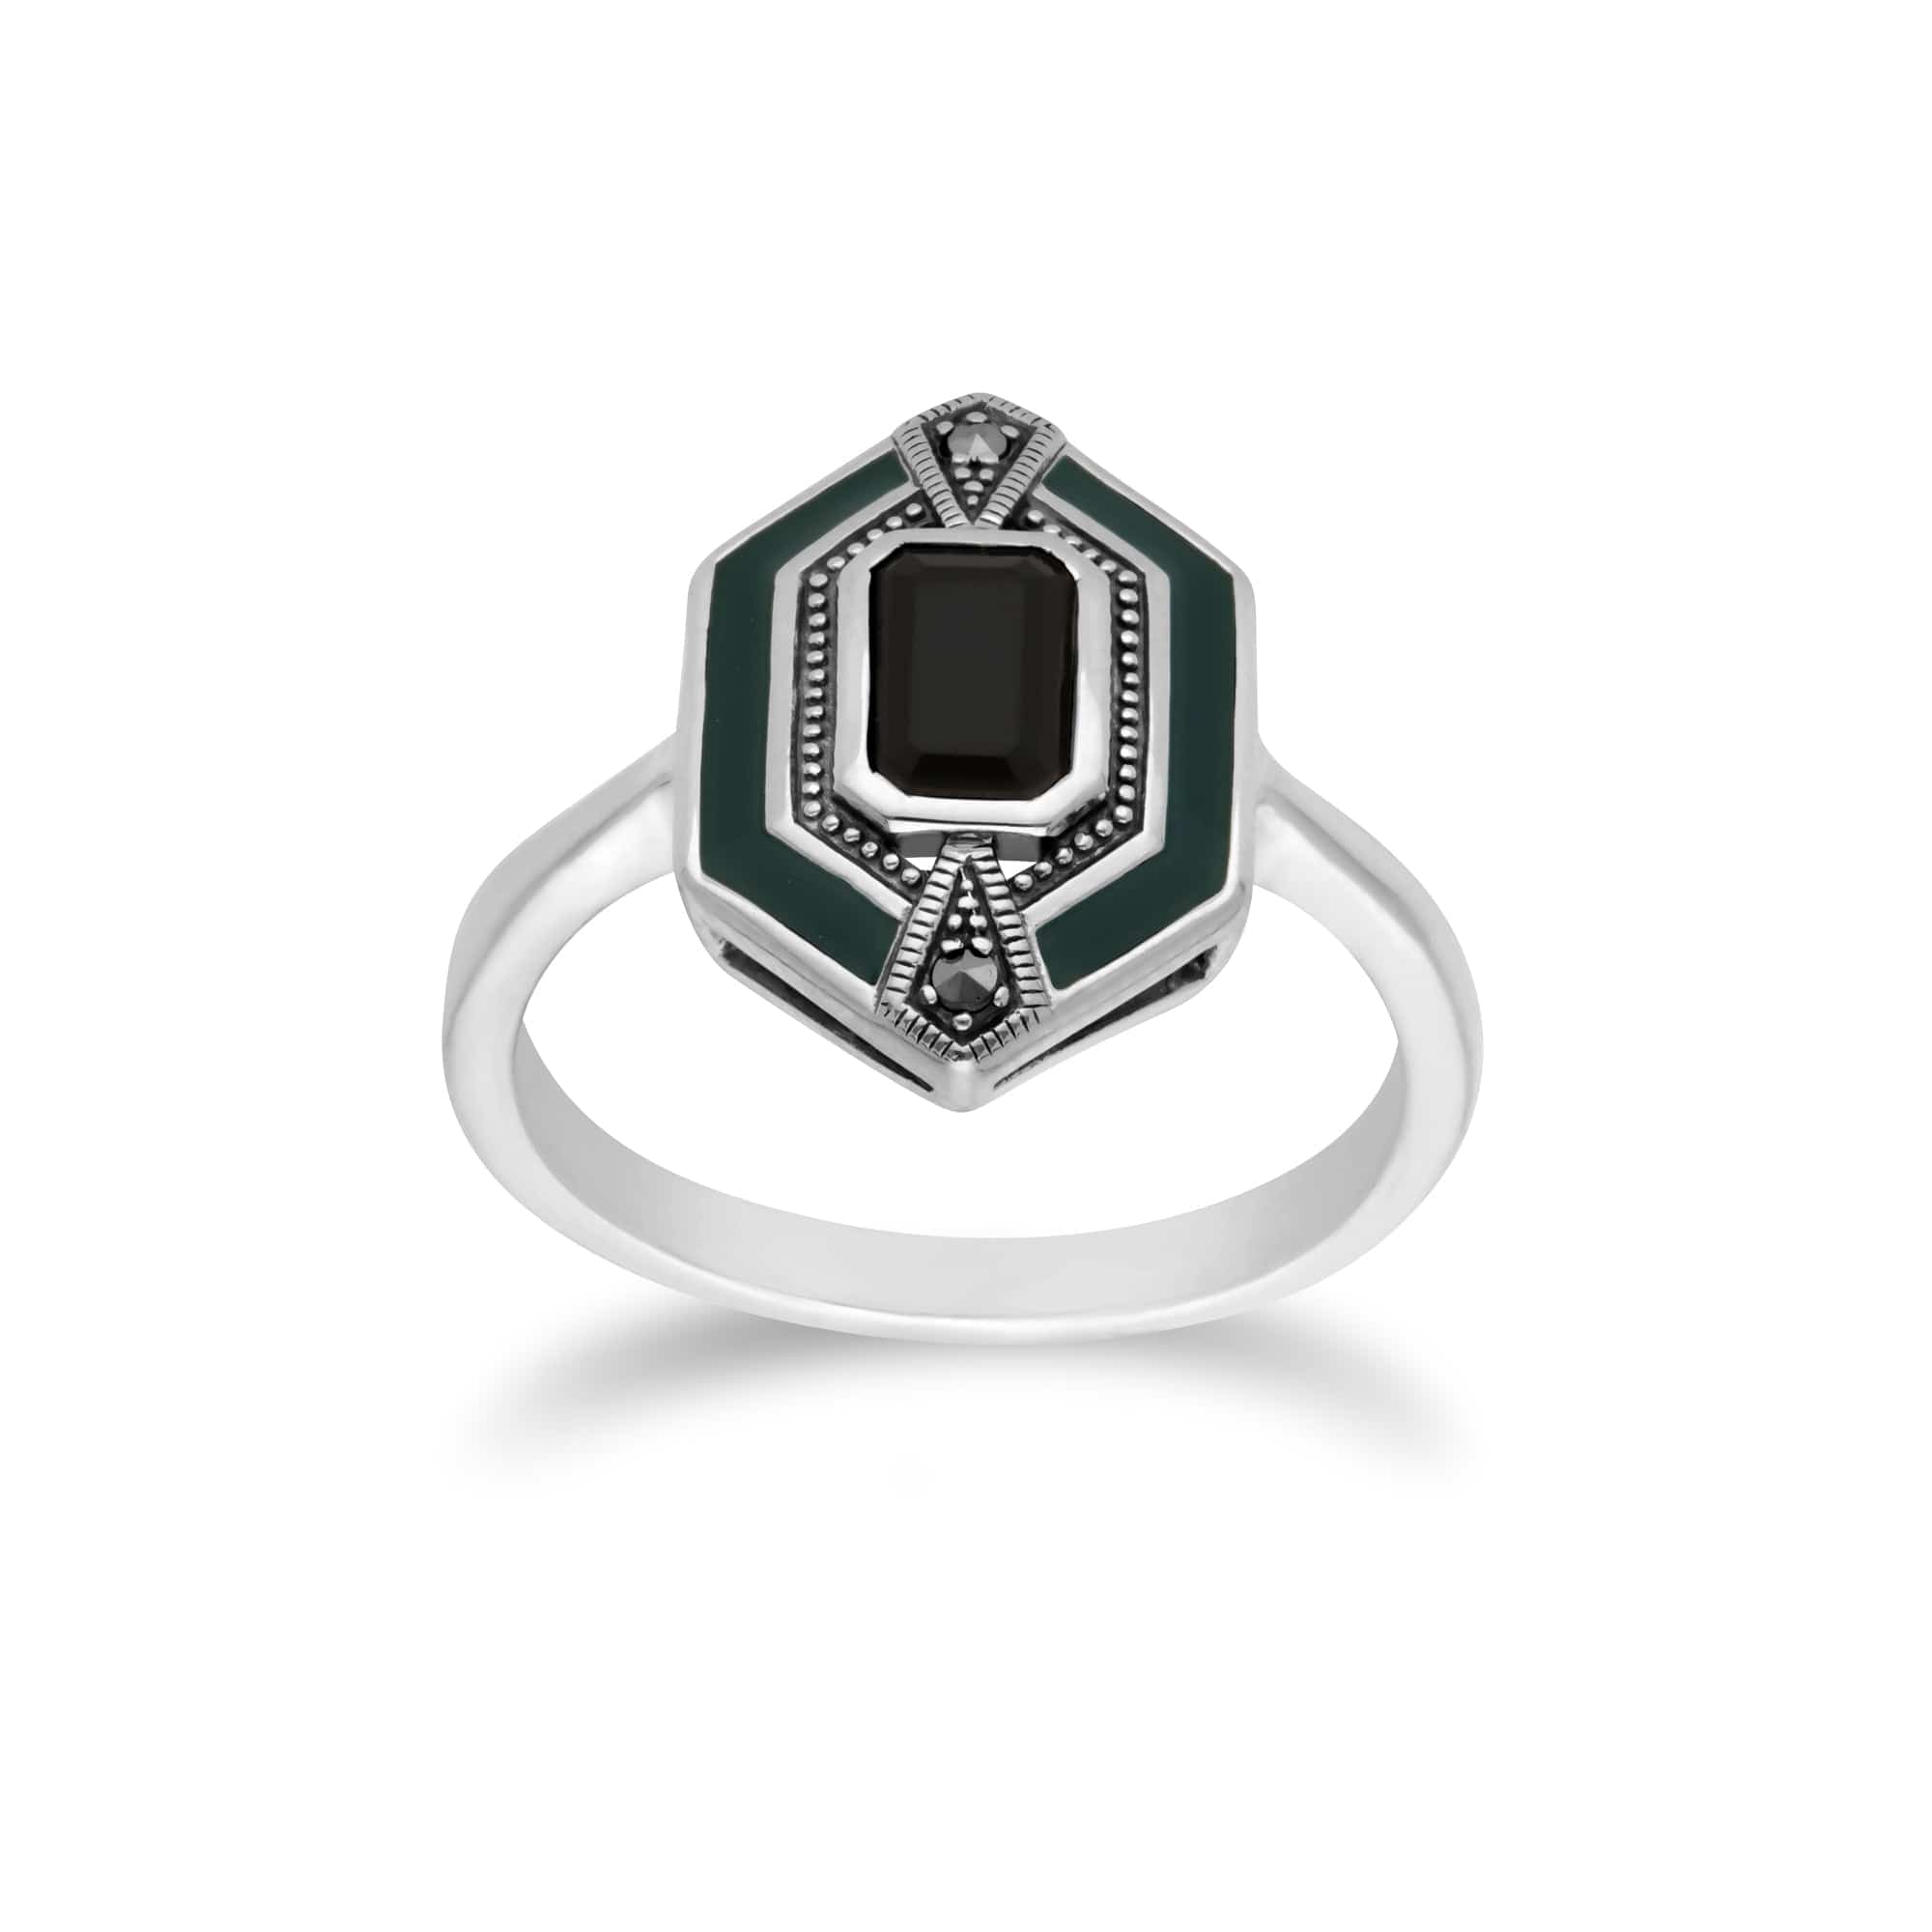 214E868104925-214R602604925 Art Deco Style Black Onyx, Marcasite & Green Enamel Hexagon Stud Earrings & Ring Set in 925 Sterling Silver 3